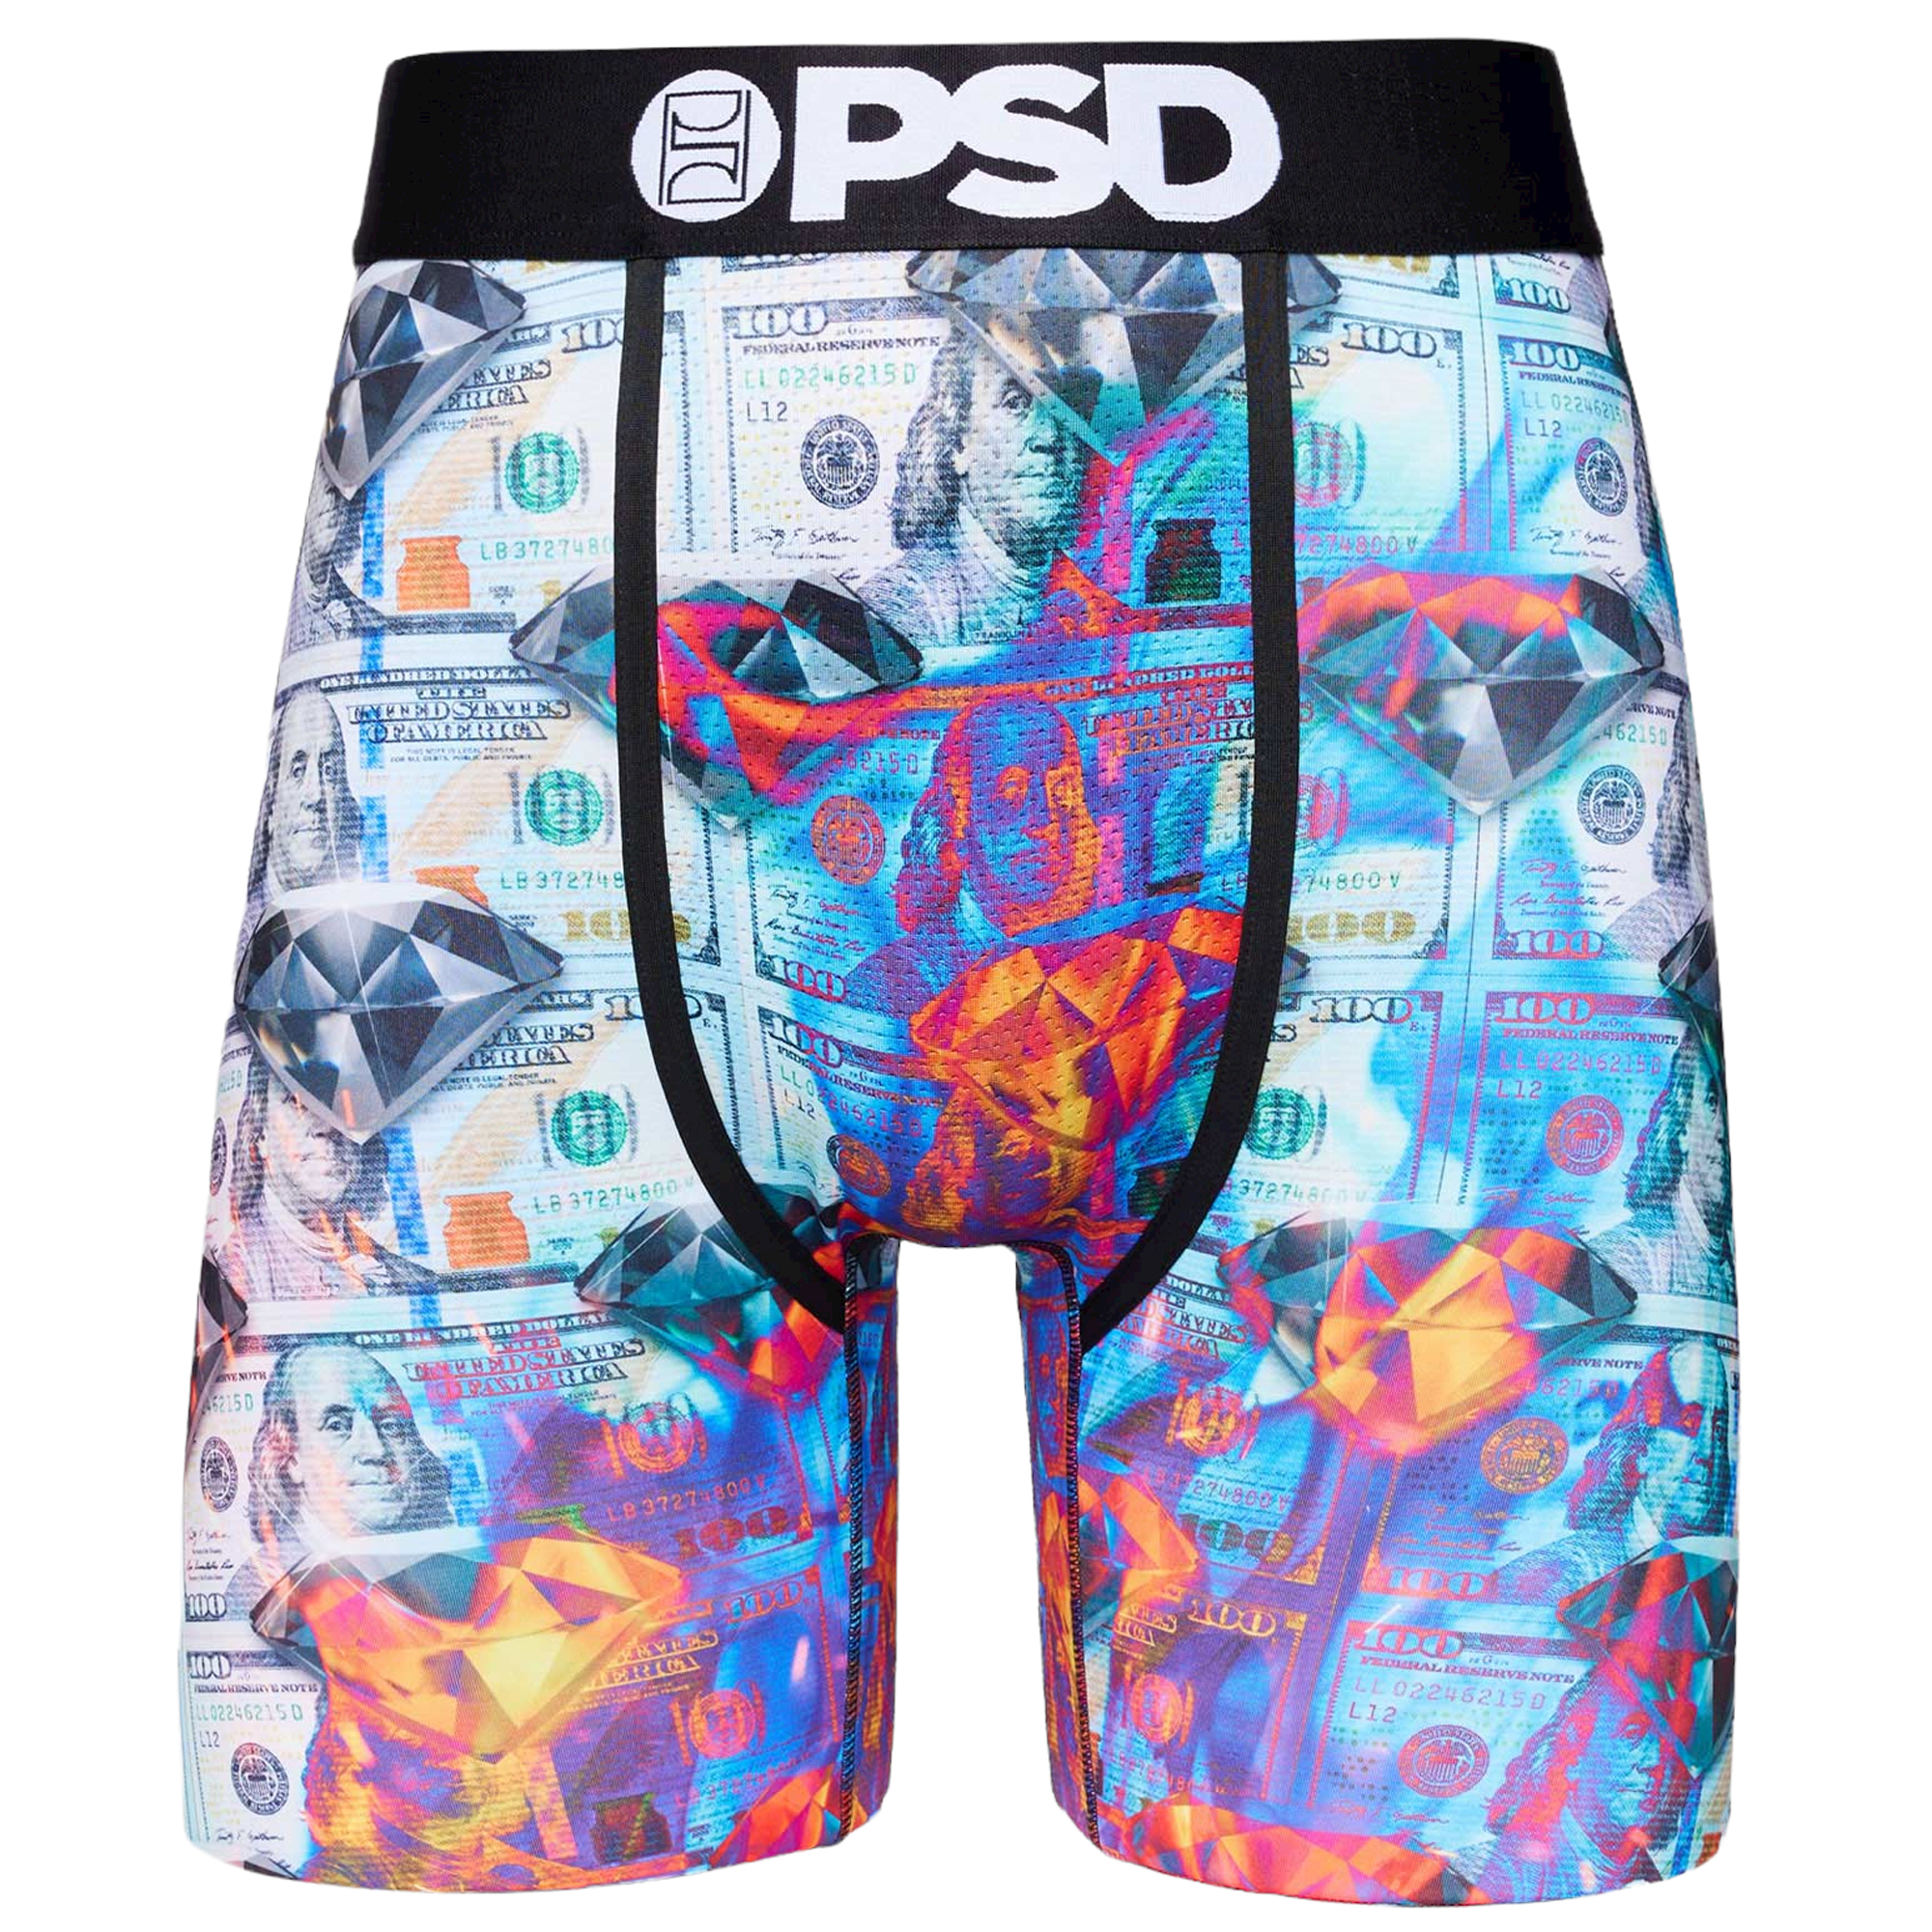 PSD Miami Washed Money Boxer Men's Bottom Underwear (Brand New